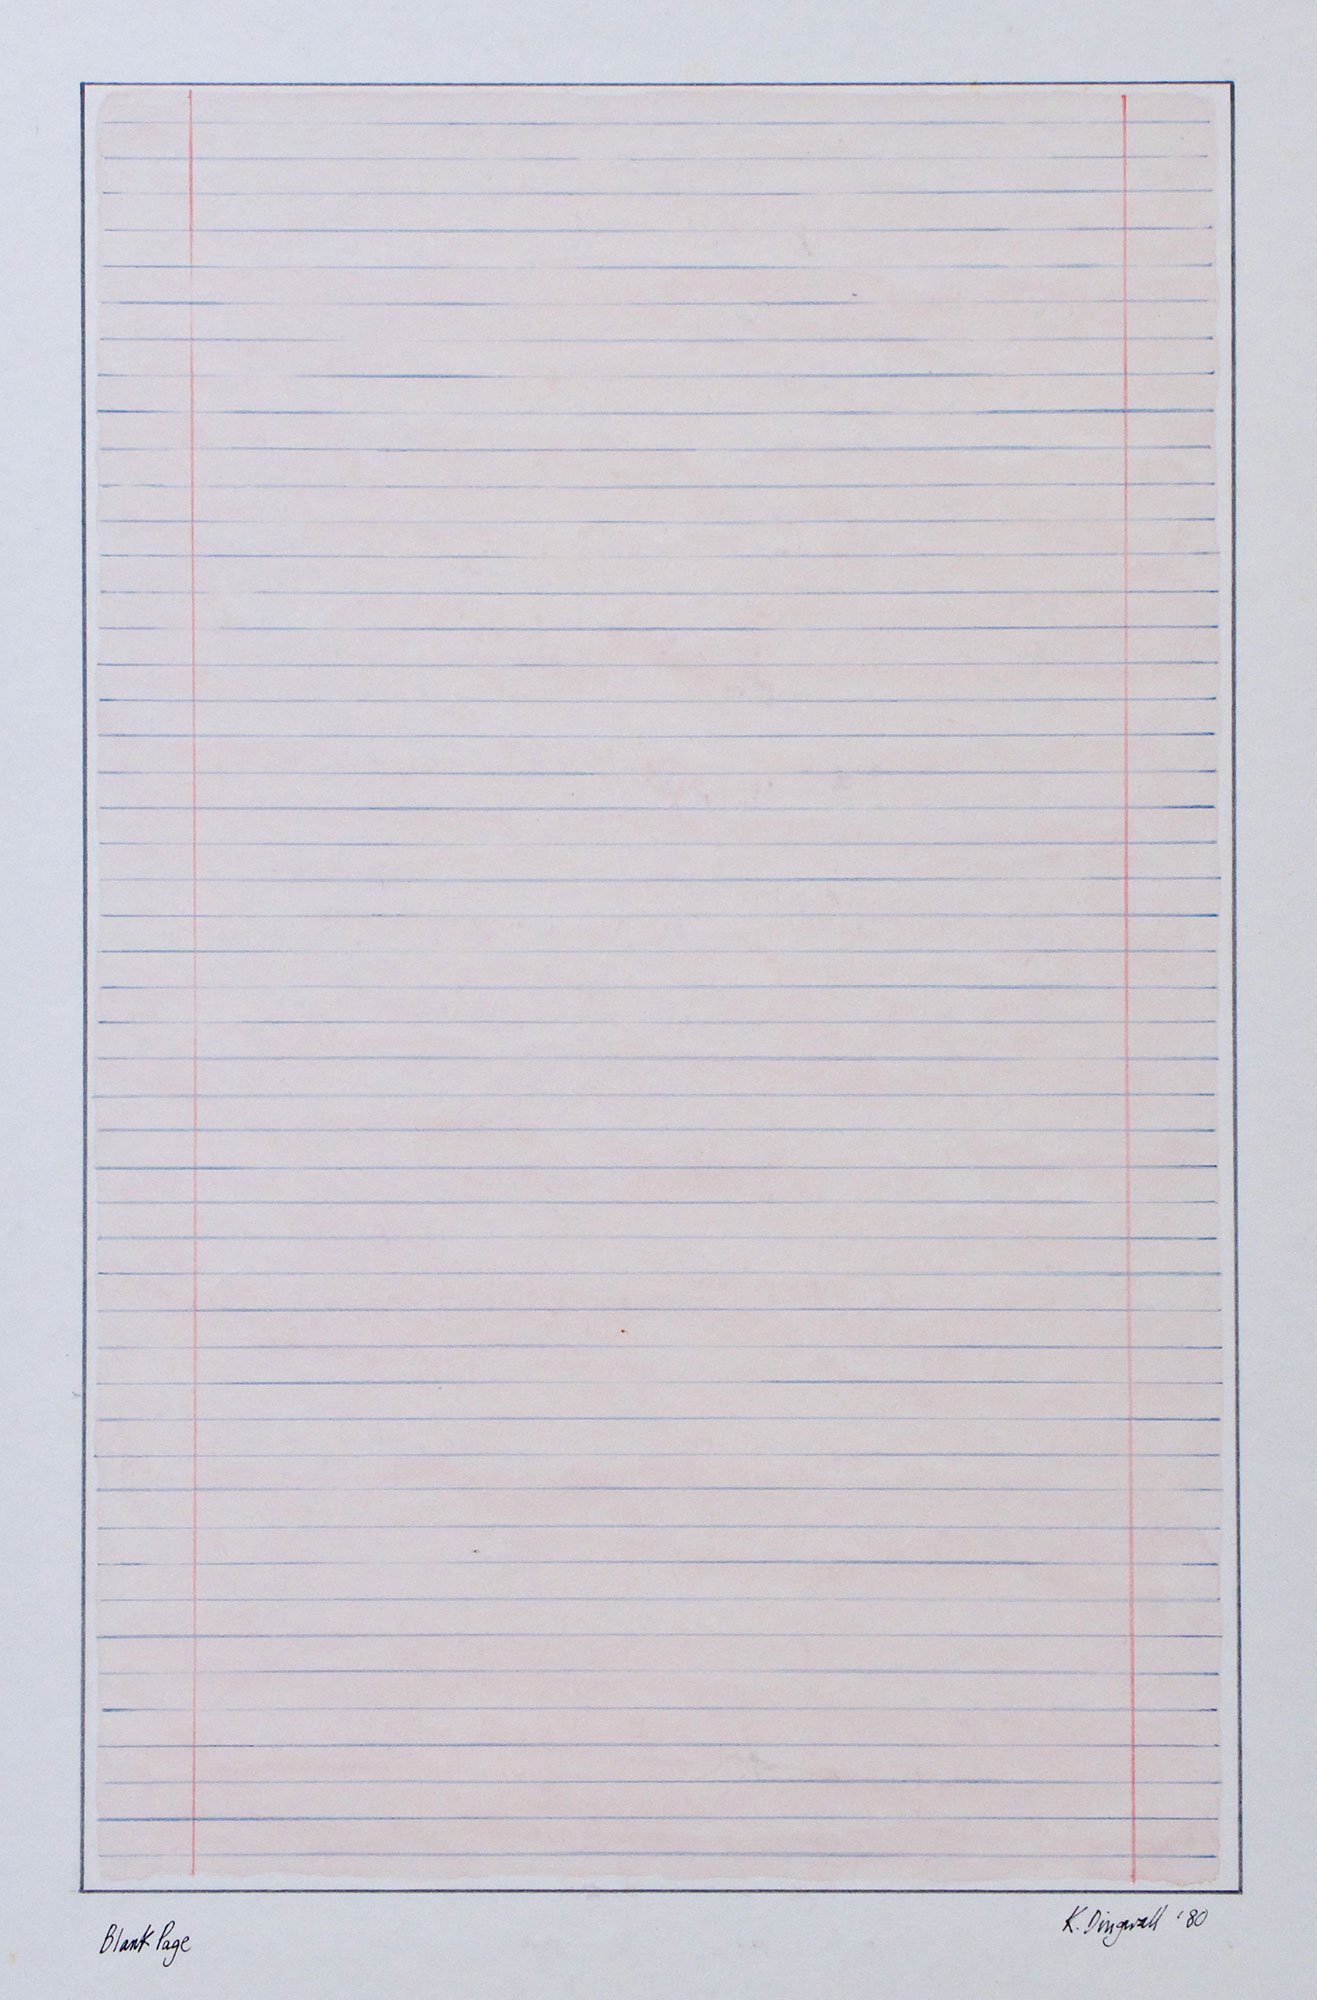 Kenneth Dingwall, Blank Page, 1980, gouache and wax pencil on card, 32cm x 20cm